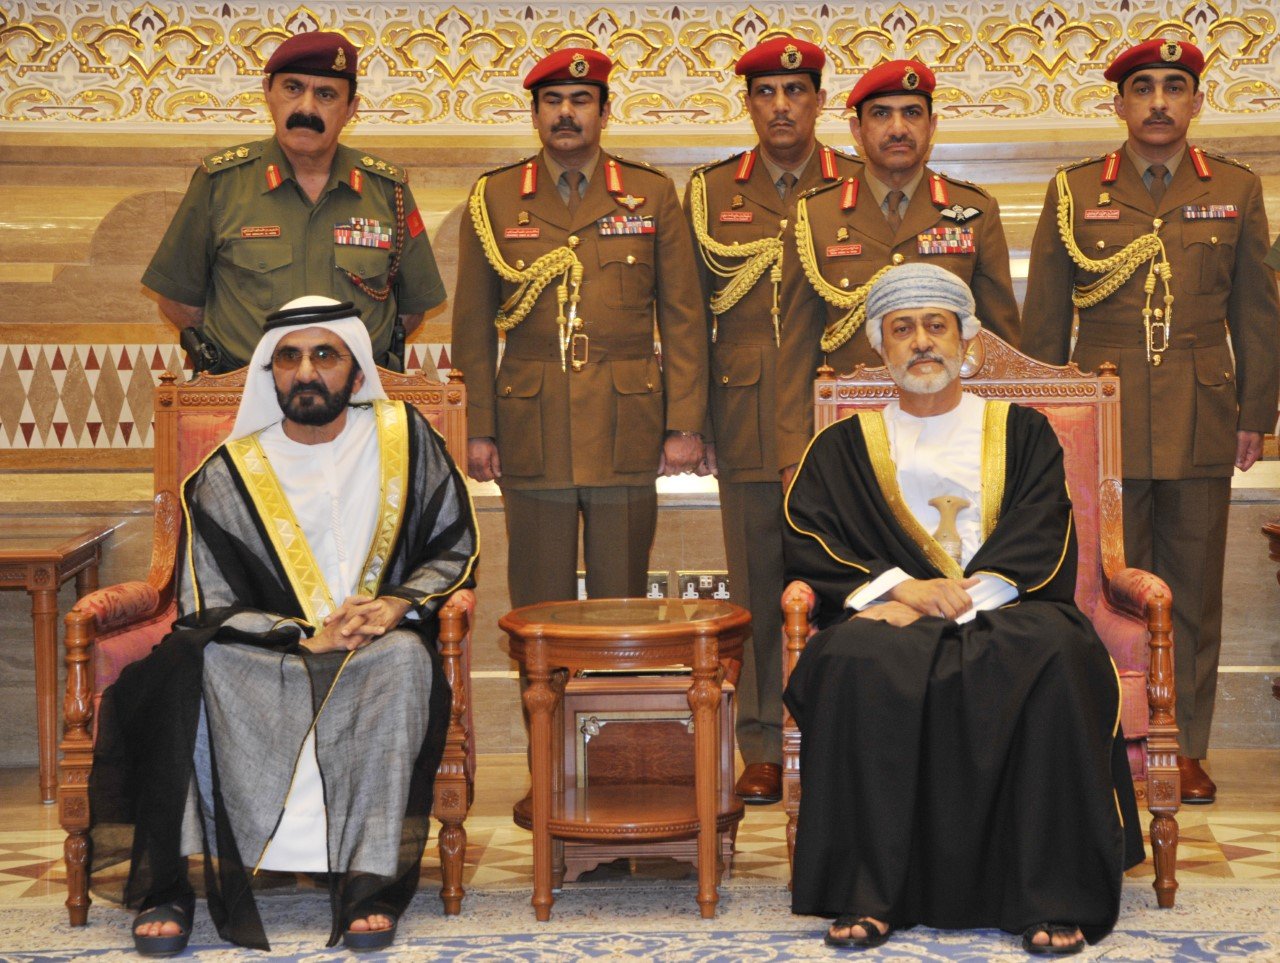 HM Sultan Haitham opens doors for all